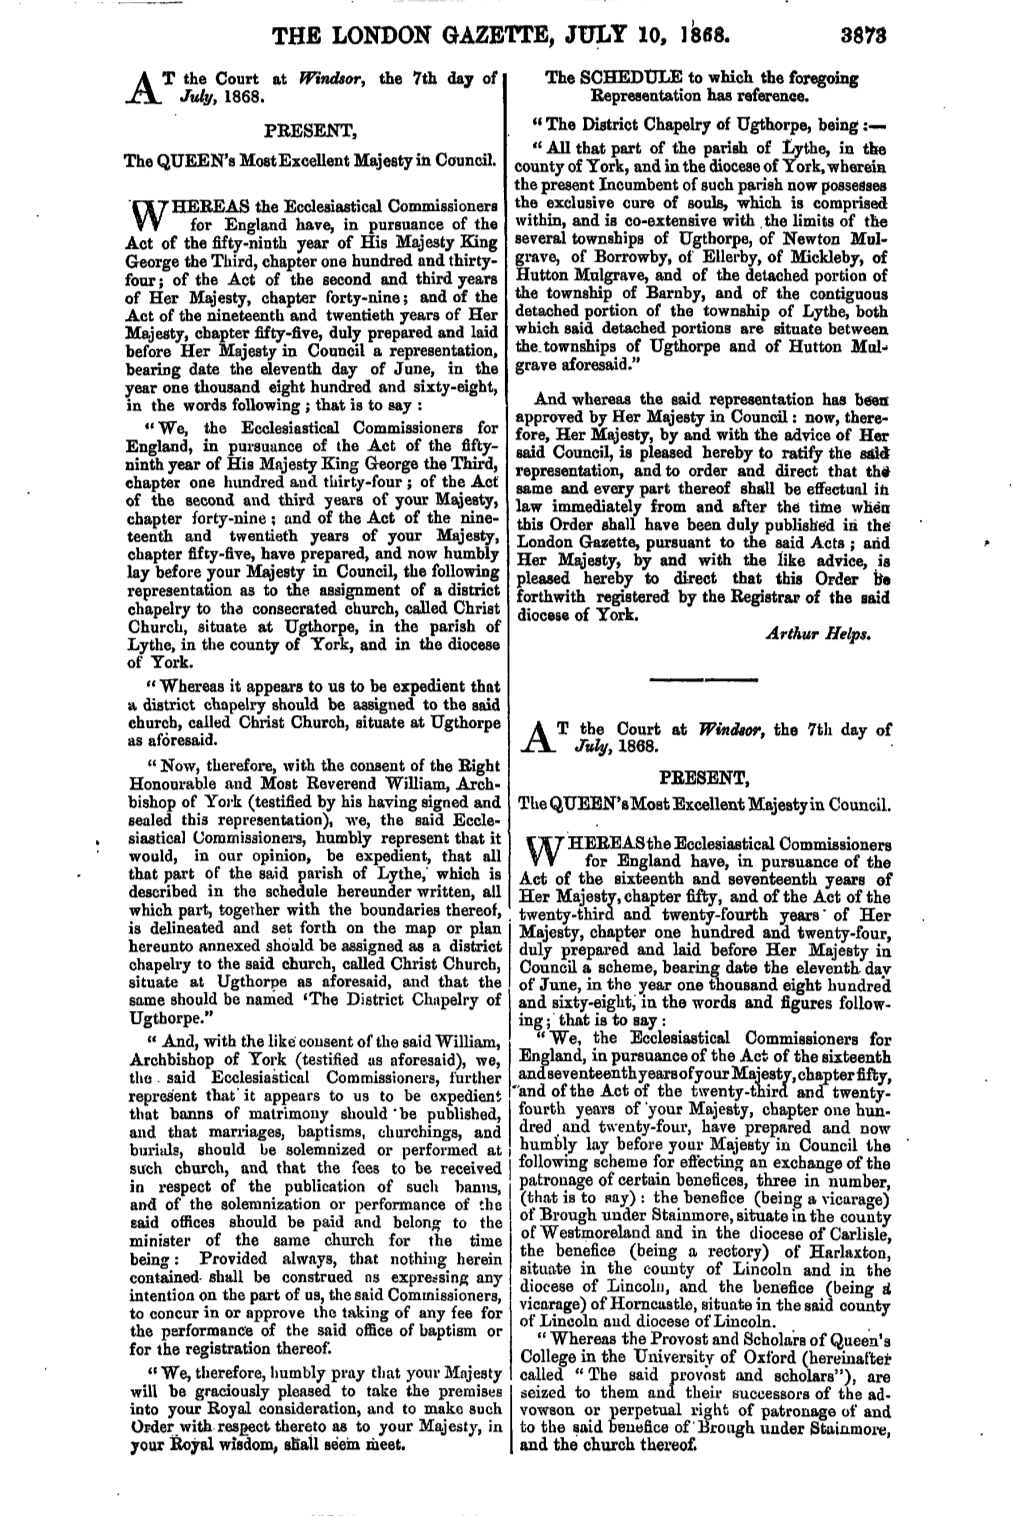 The London Gazette, July 10, 1868. 3873